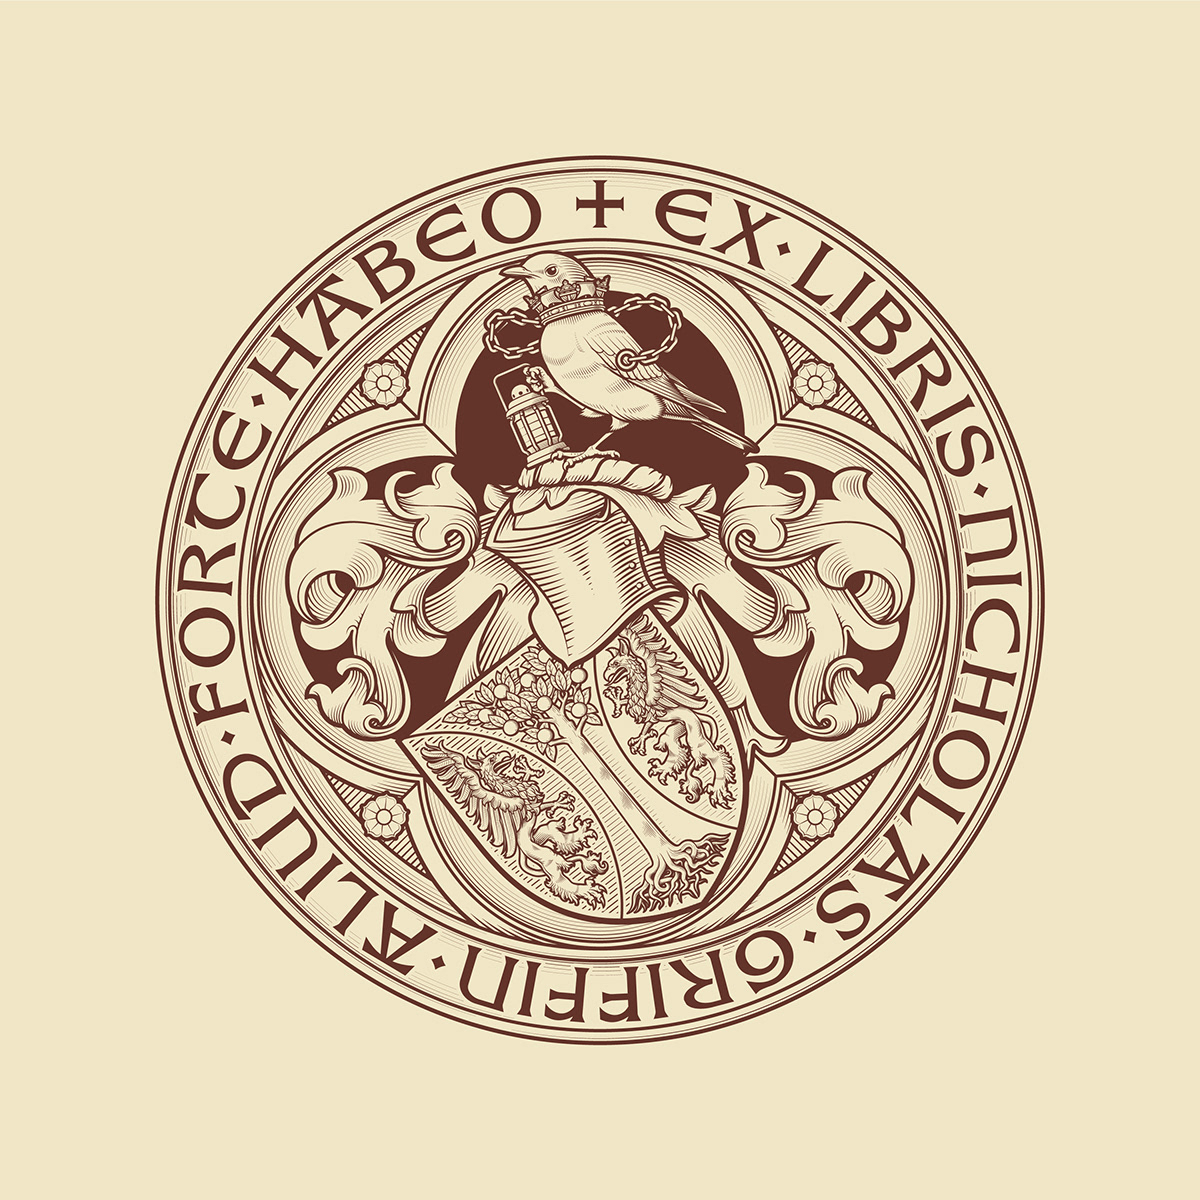 crest coat of arms heraldry heraldic vector etching wappen shield wings